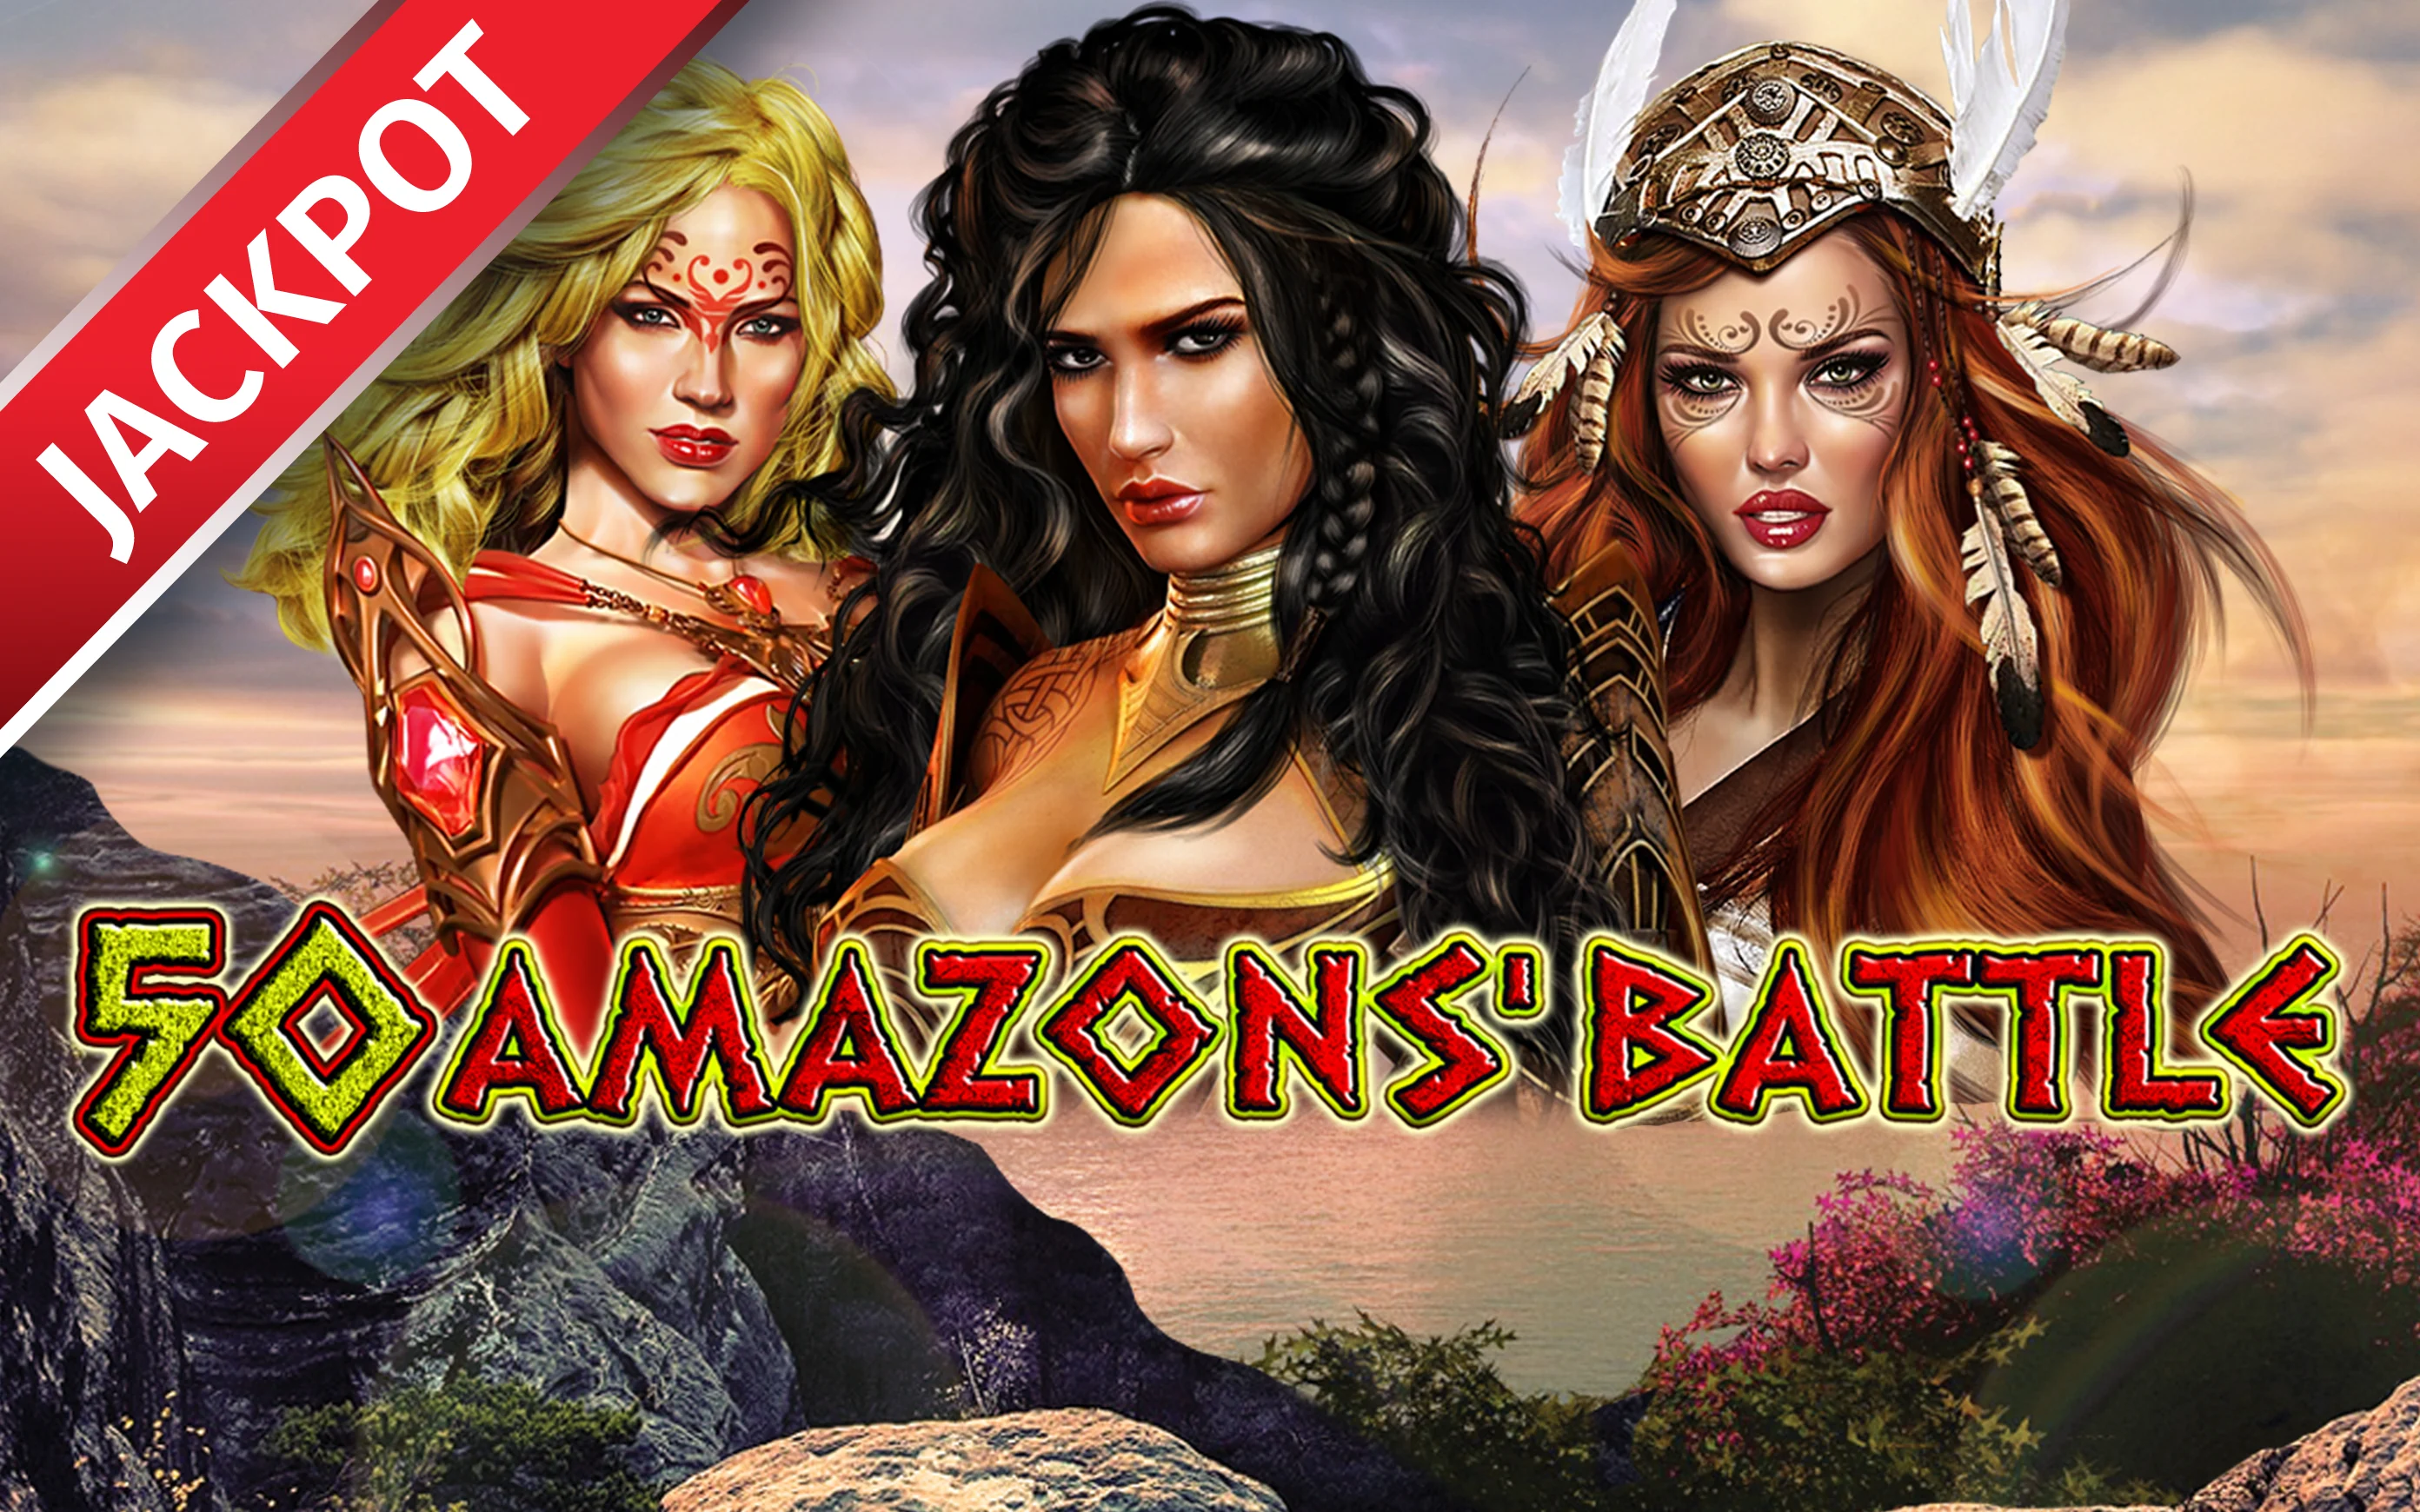 Starcasino.be online casino üzerinden 50 Amazons’ Battle oynayın